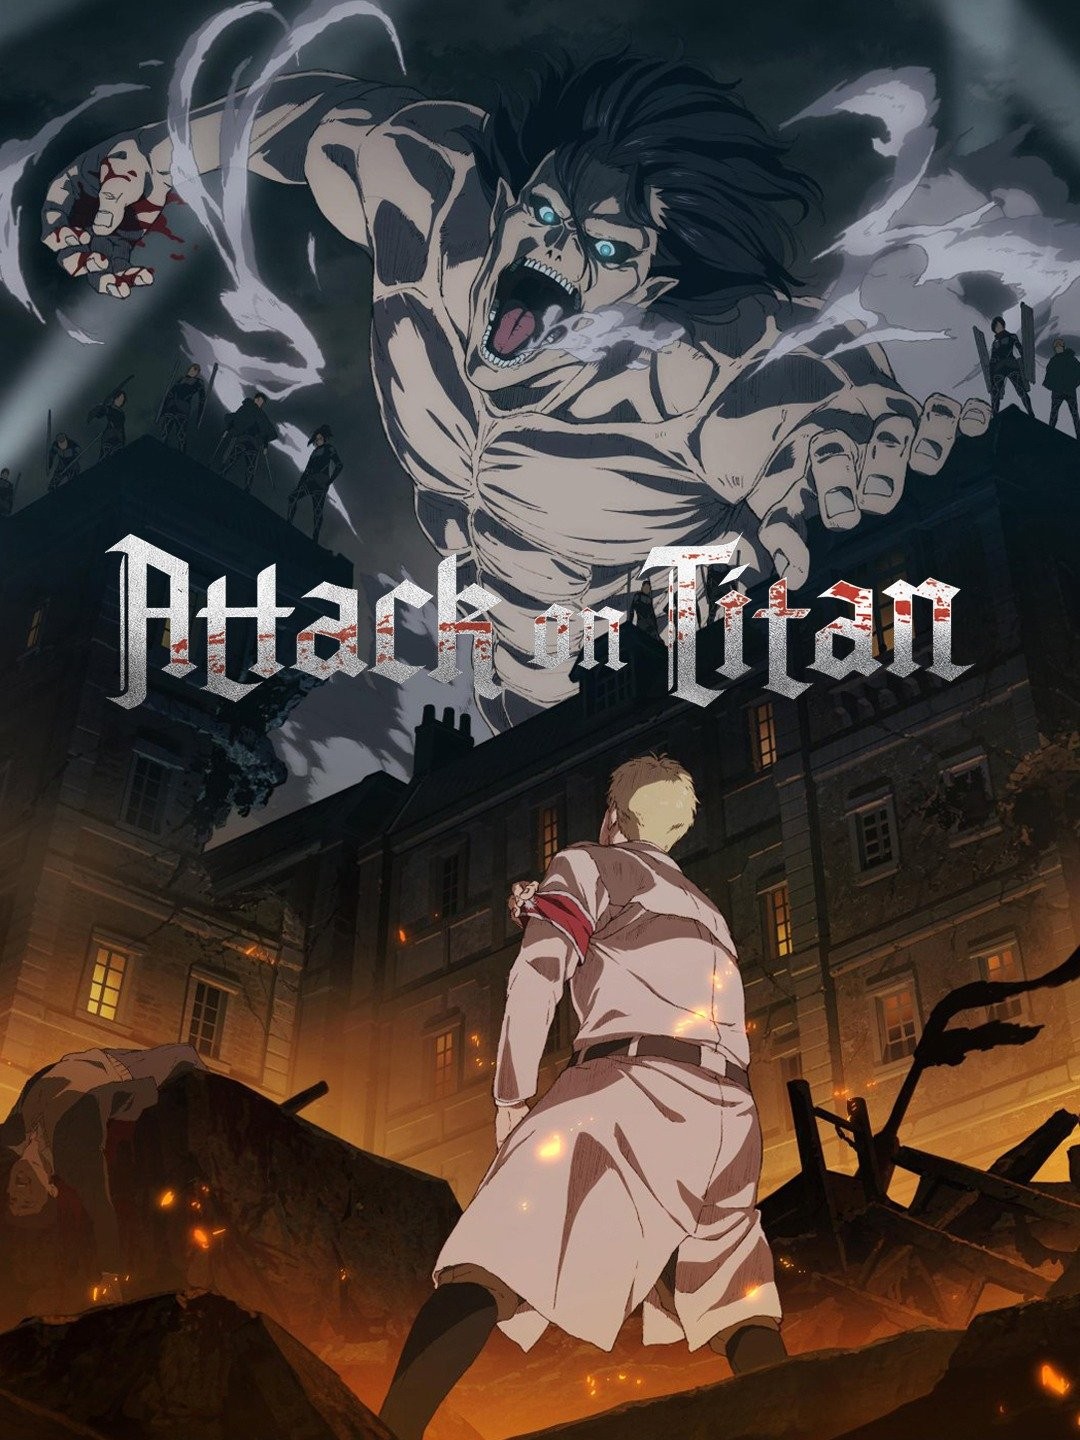 Attack on Titan Season 4 (Final Season) - Official Trailer